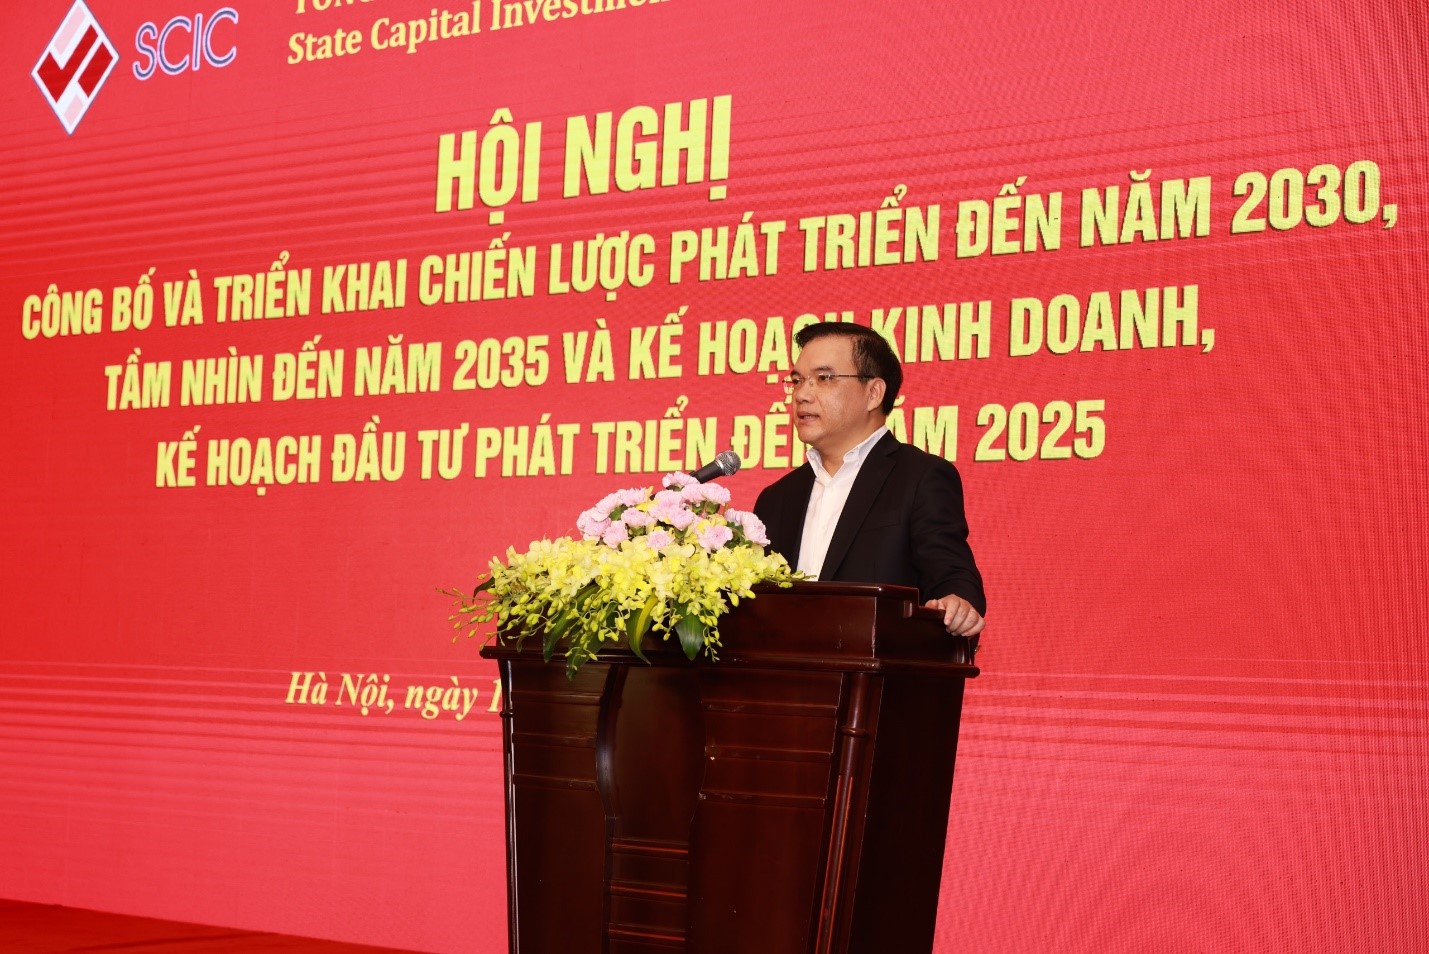 Đồng chí Nguyễn Chí Thành - Bí thư Đảng ủy, Chủ tịch HĐTV SCIC phát biểu tại Hội nghị